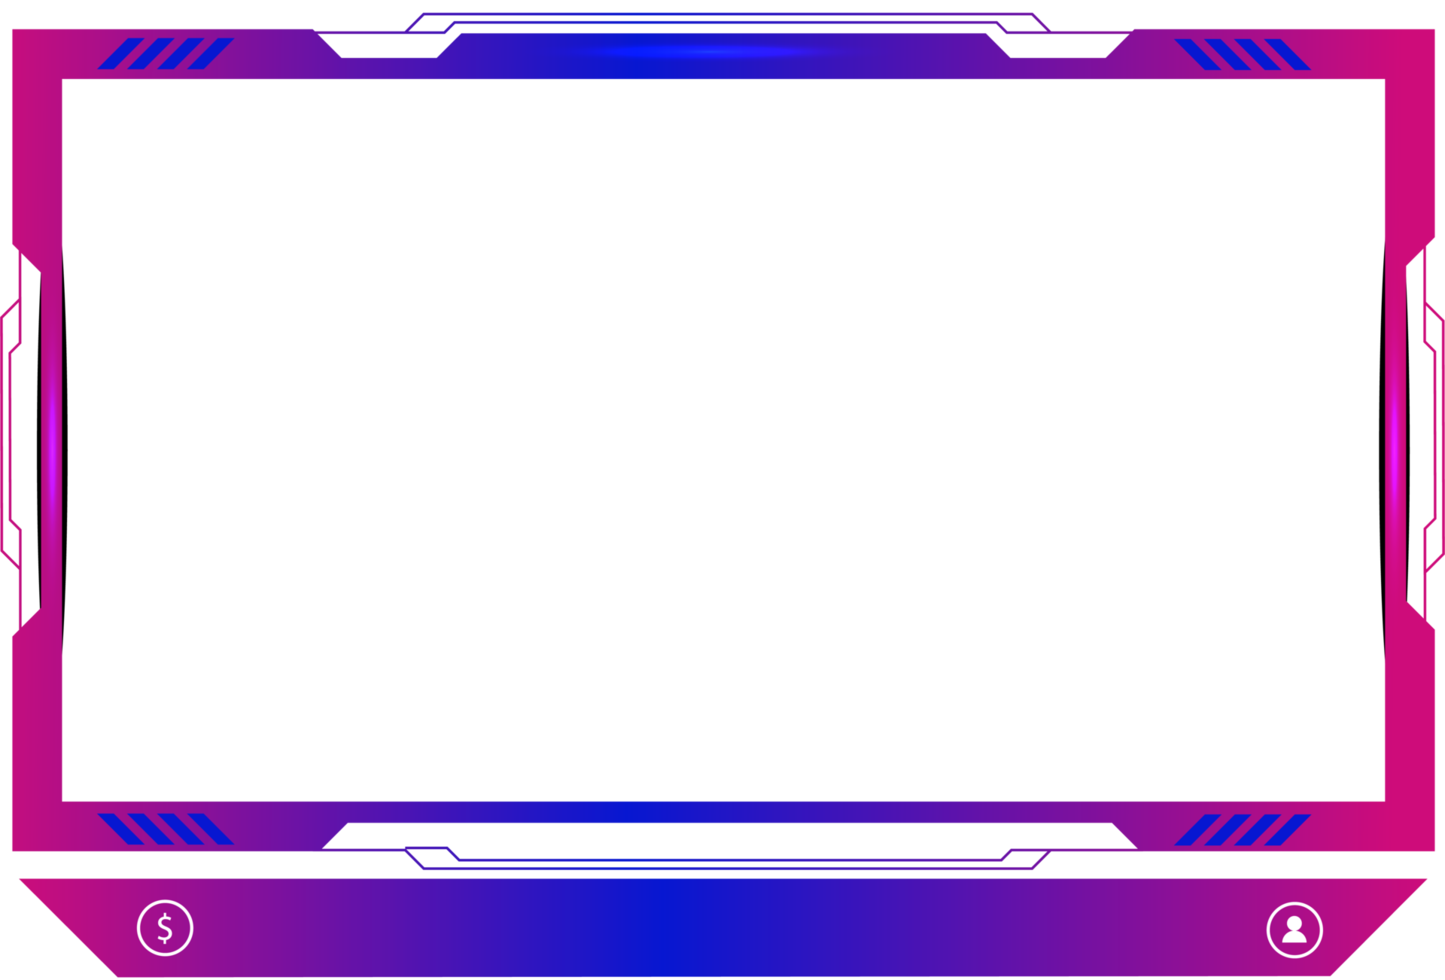 décoration de superposition de diffusion en direct avec une nuance de couleur rose et bleu girly. panneau d'écran de jeu en ligne et conception de bordure pour les joueurs. éléments de diffusion en direct png avec des boutons colorés.